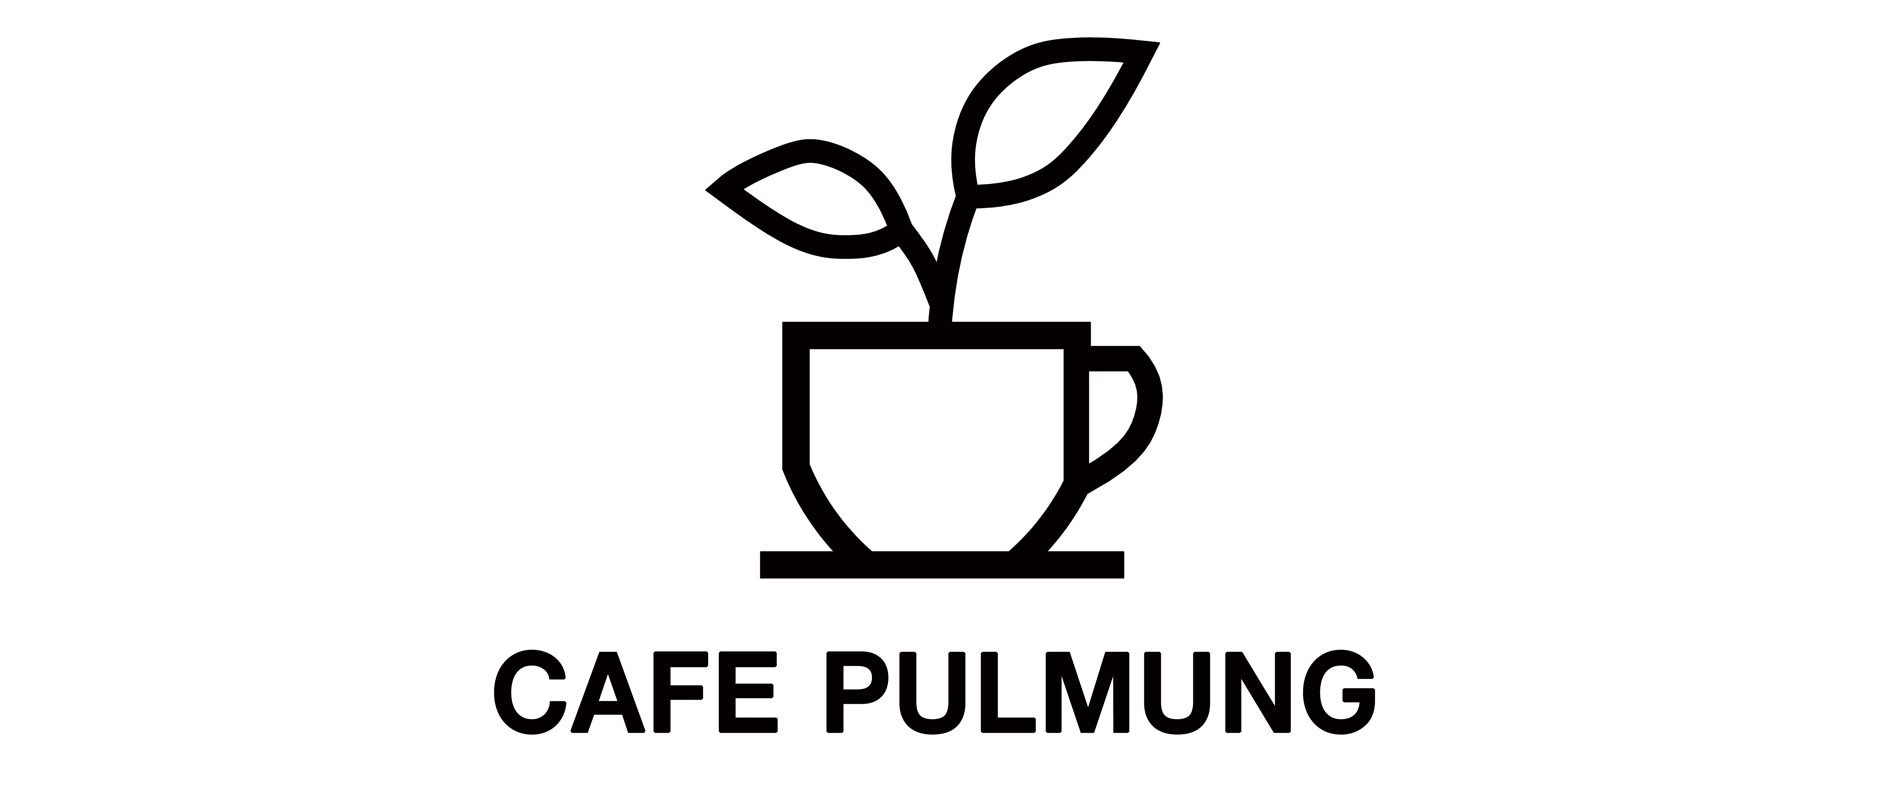 카페풀멍(CAFE PULMUNG)의 기업로고